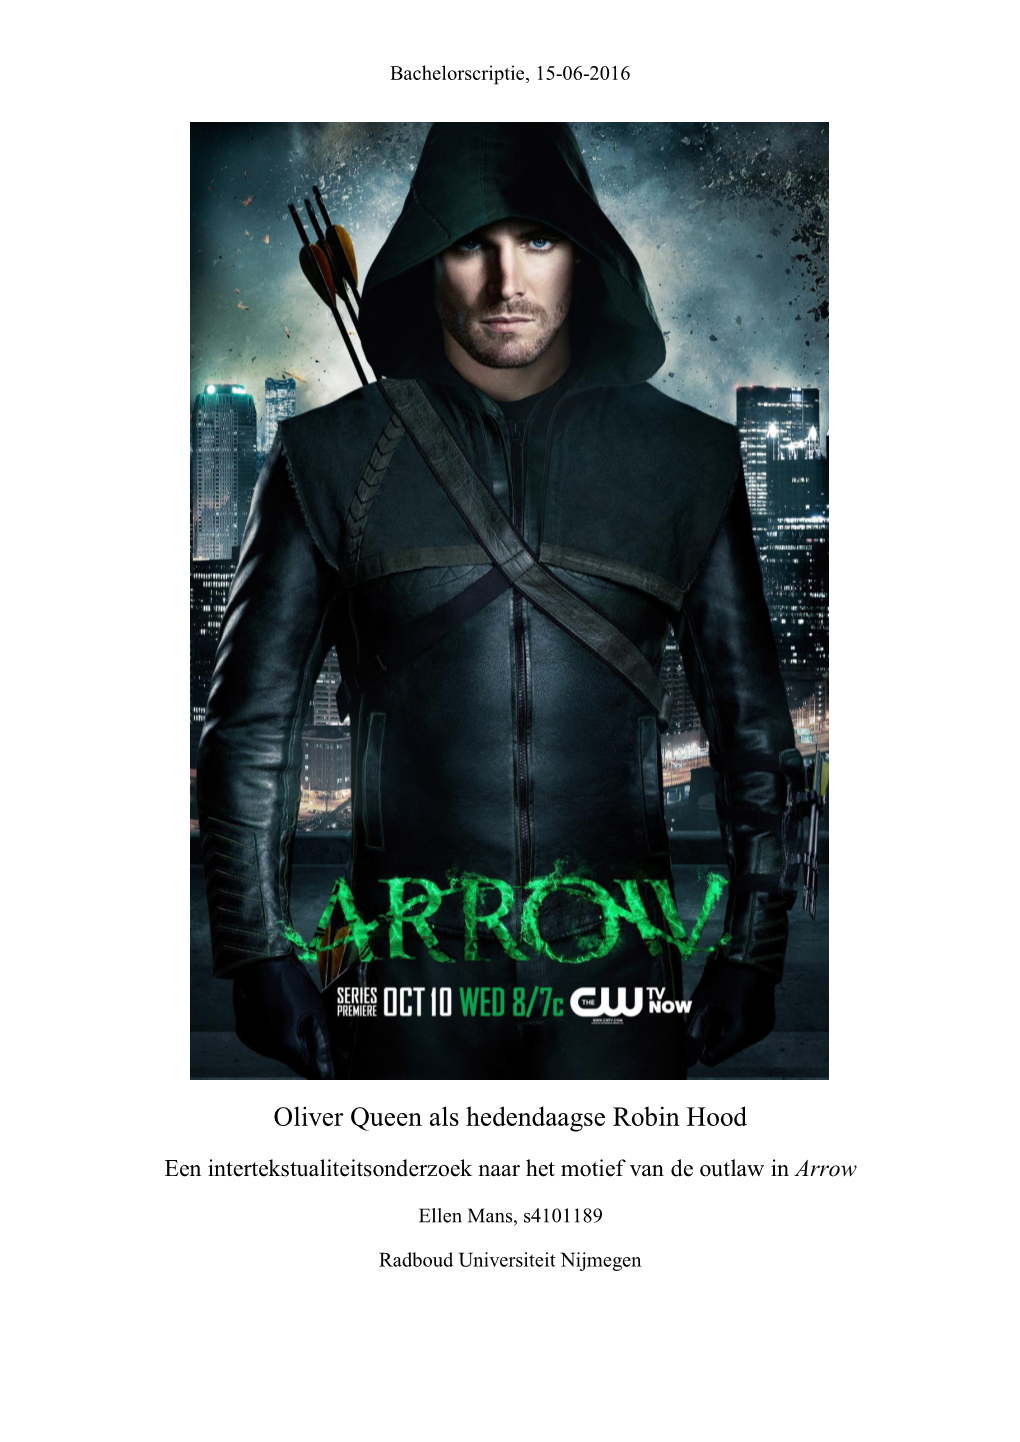 Oliver Queen Als Hedendaagse Robin Hood